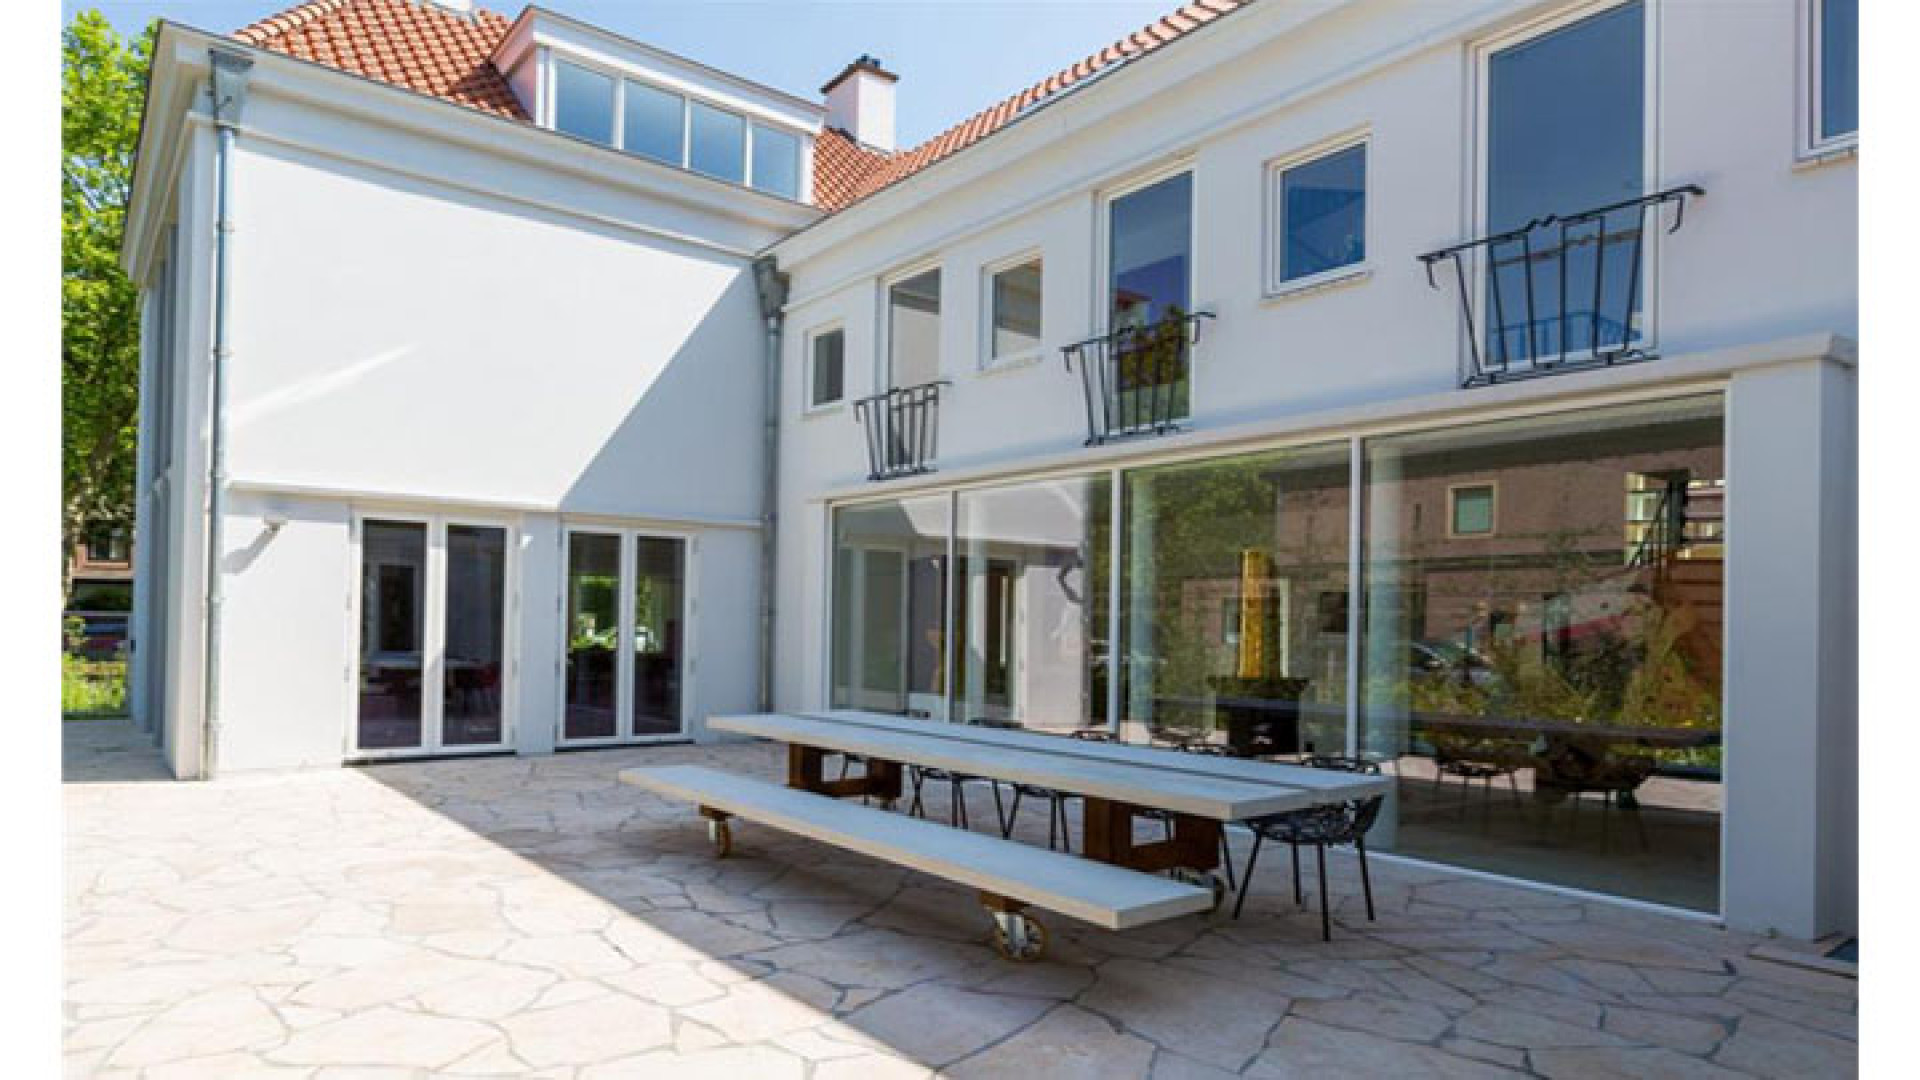 Binnenkijken in prachtige te koop staande villa van Amanda Krabbe en haar vriend Harrie. Zie foto's